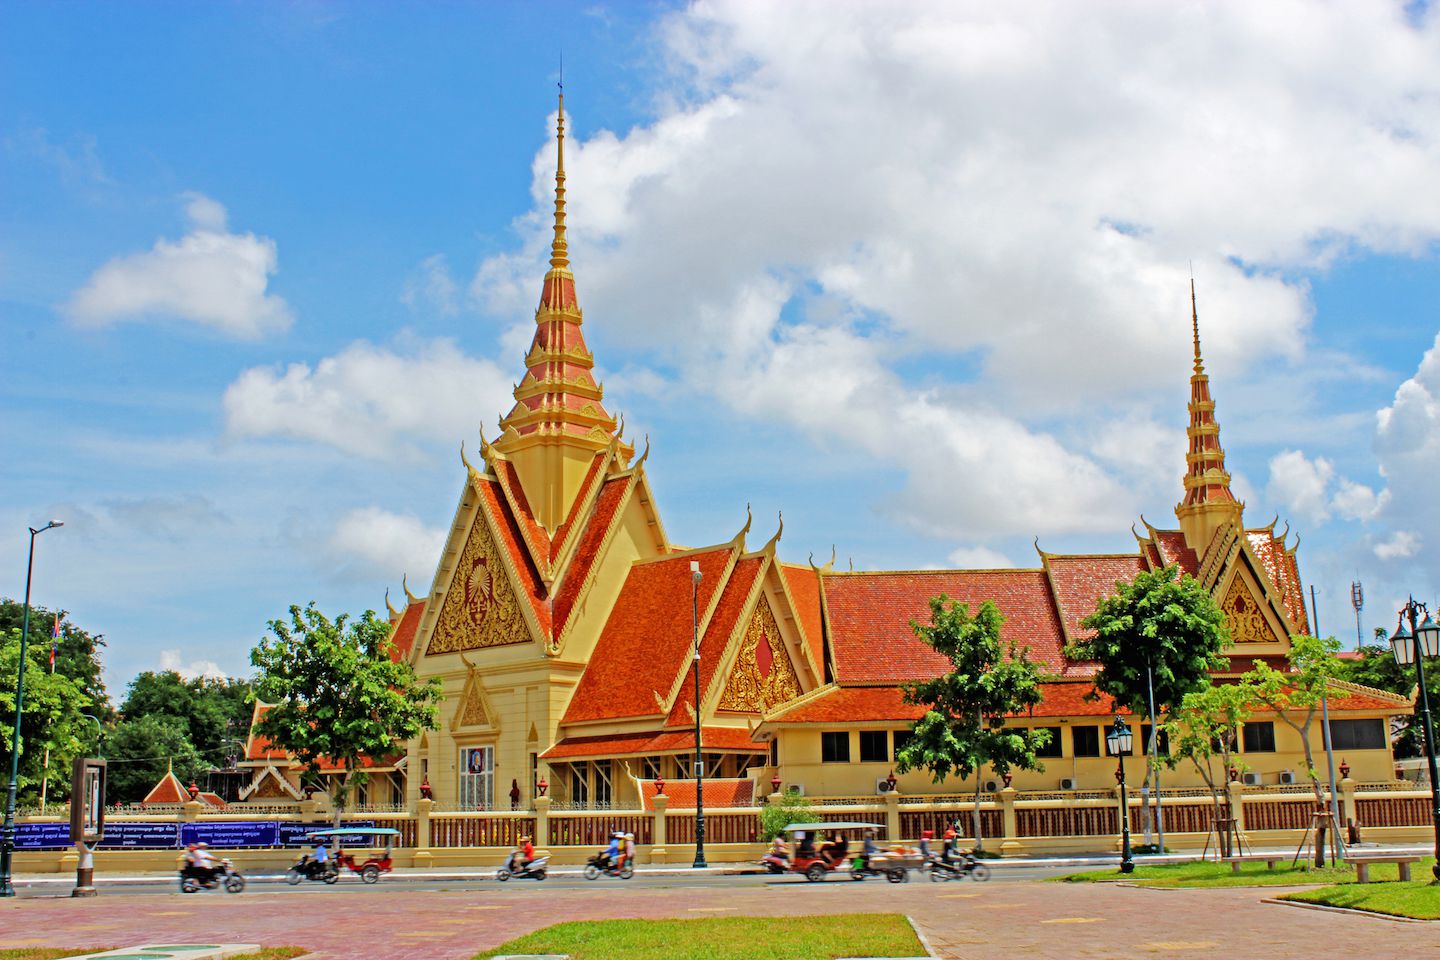 Supreme court of Cambodia in Phnom Penh